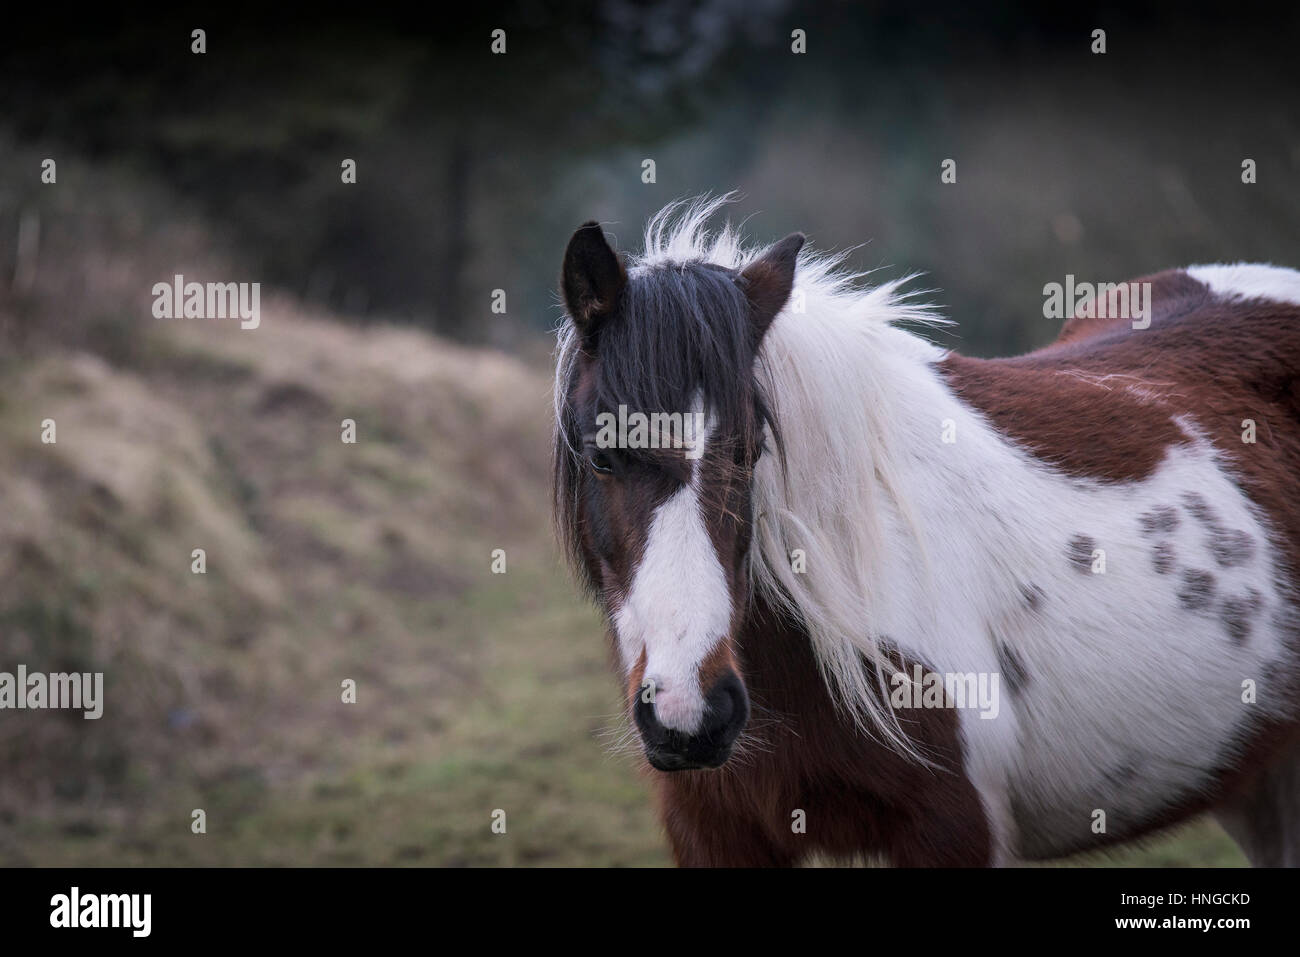 Ein wildes Pony Bodmin Moor steht im rauen Lebensraum von groben Tor auf Bodmin Moor in Cornwall. Stockfoto